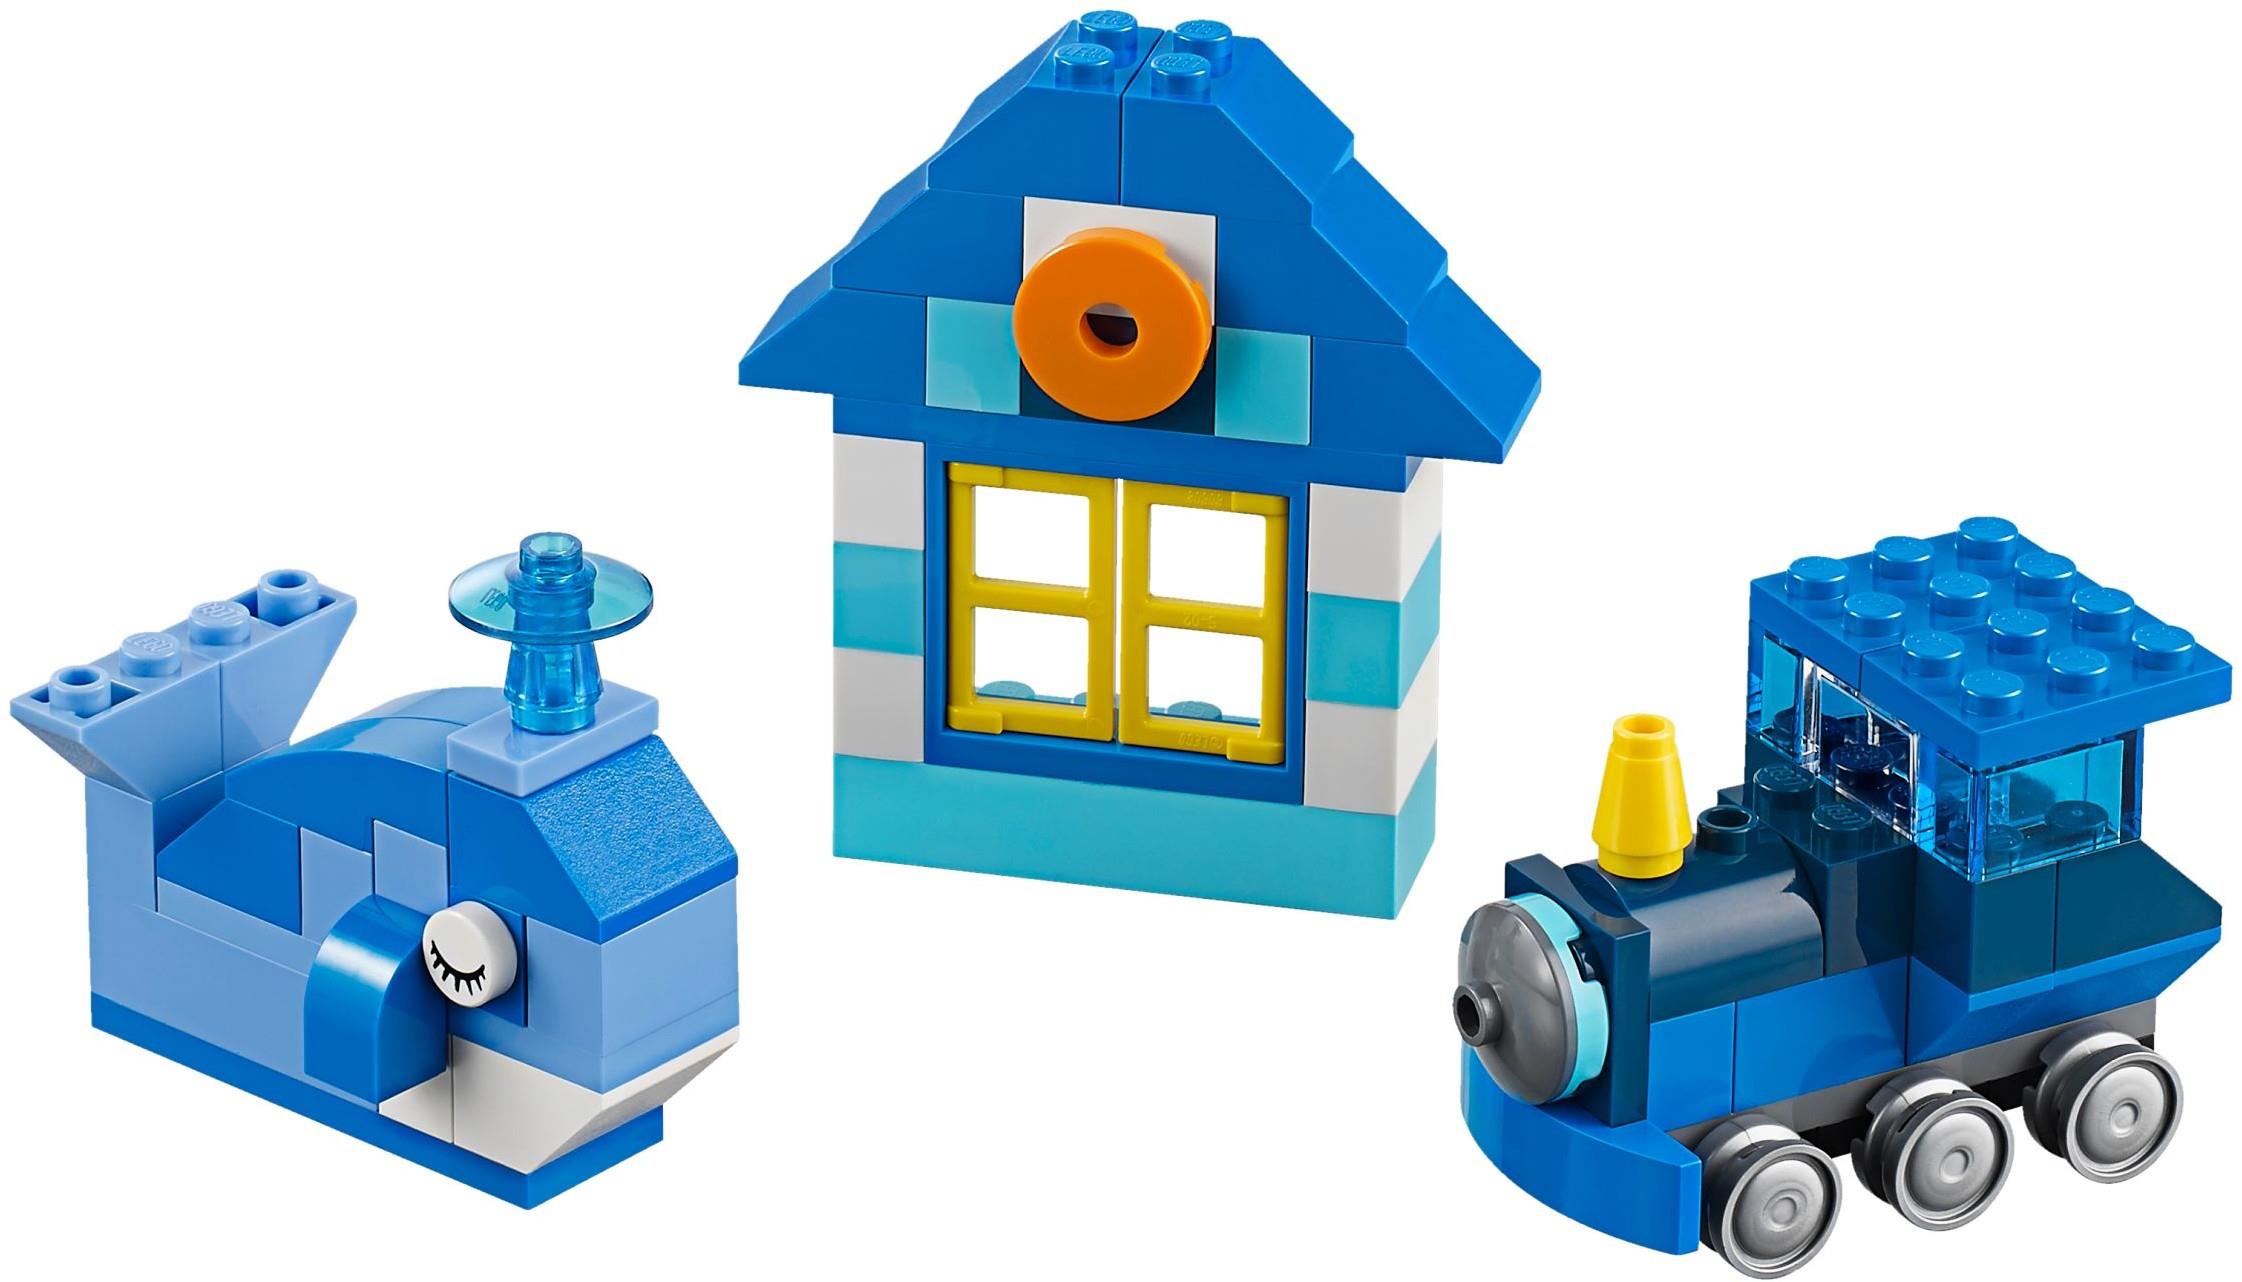 th greb Turbine LEGO 10706 Blue Creative Box | BrickEconomy